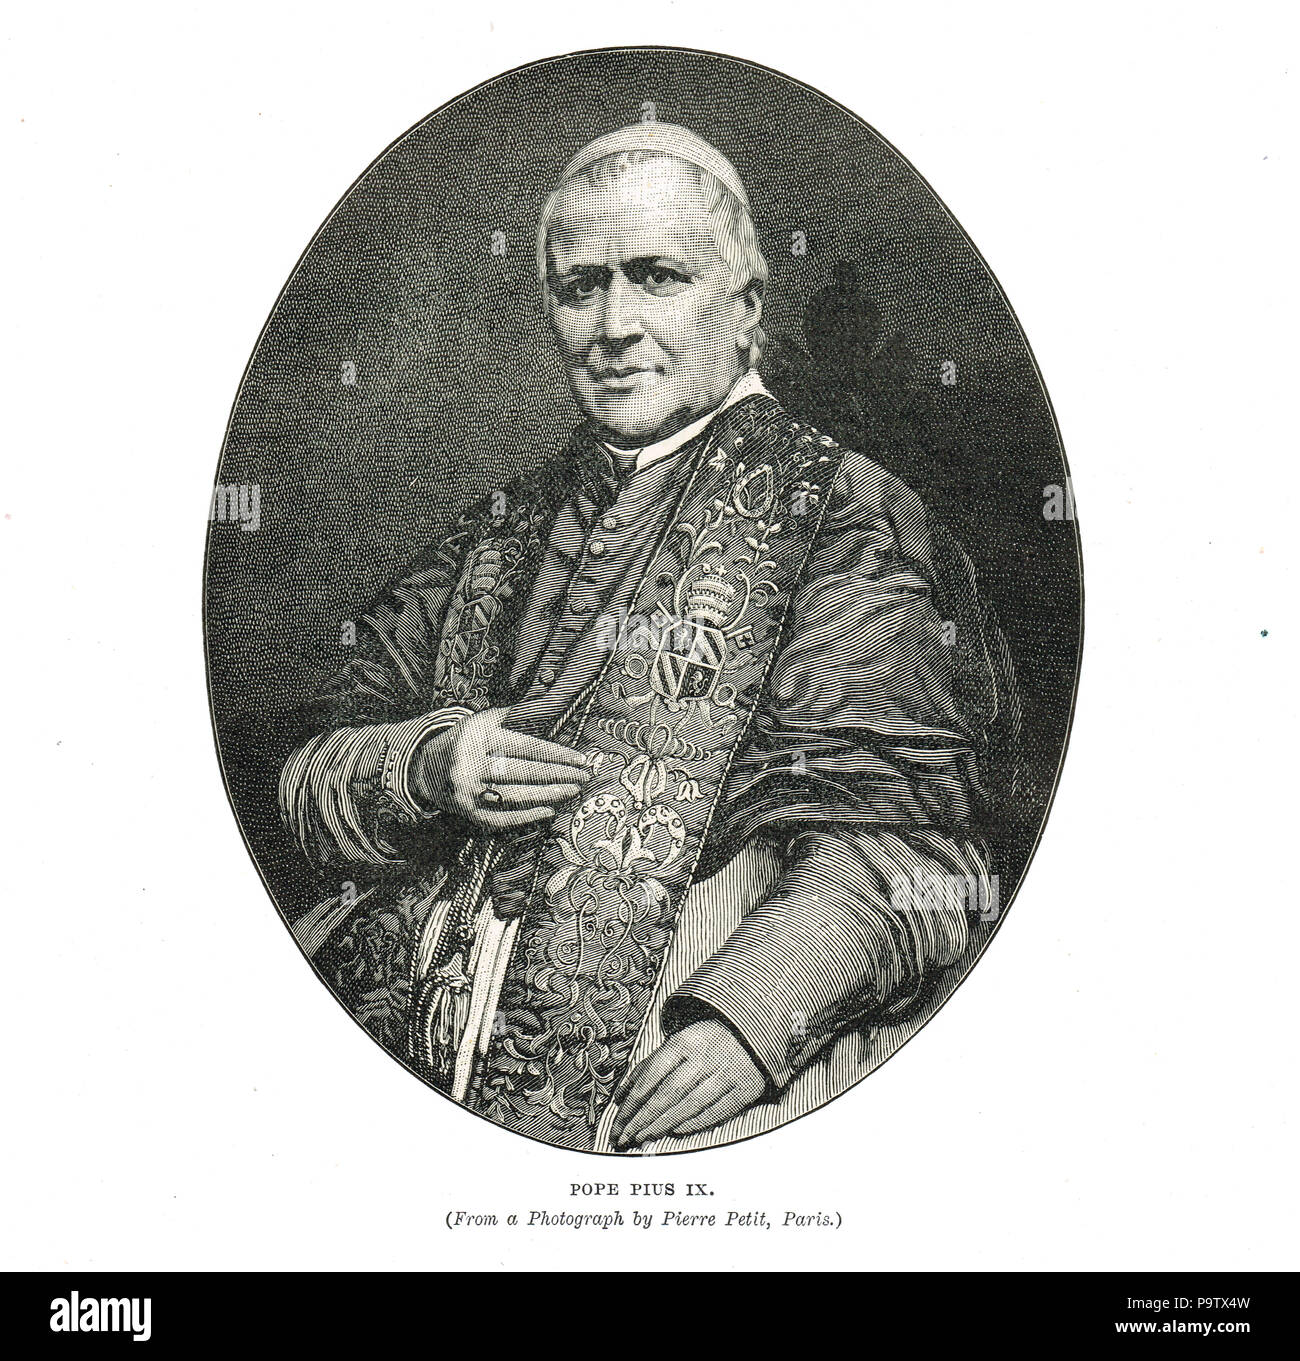 El Papa Pío IX, jefe de la Iglesia Católica 1846-1878 Foto de stock